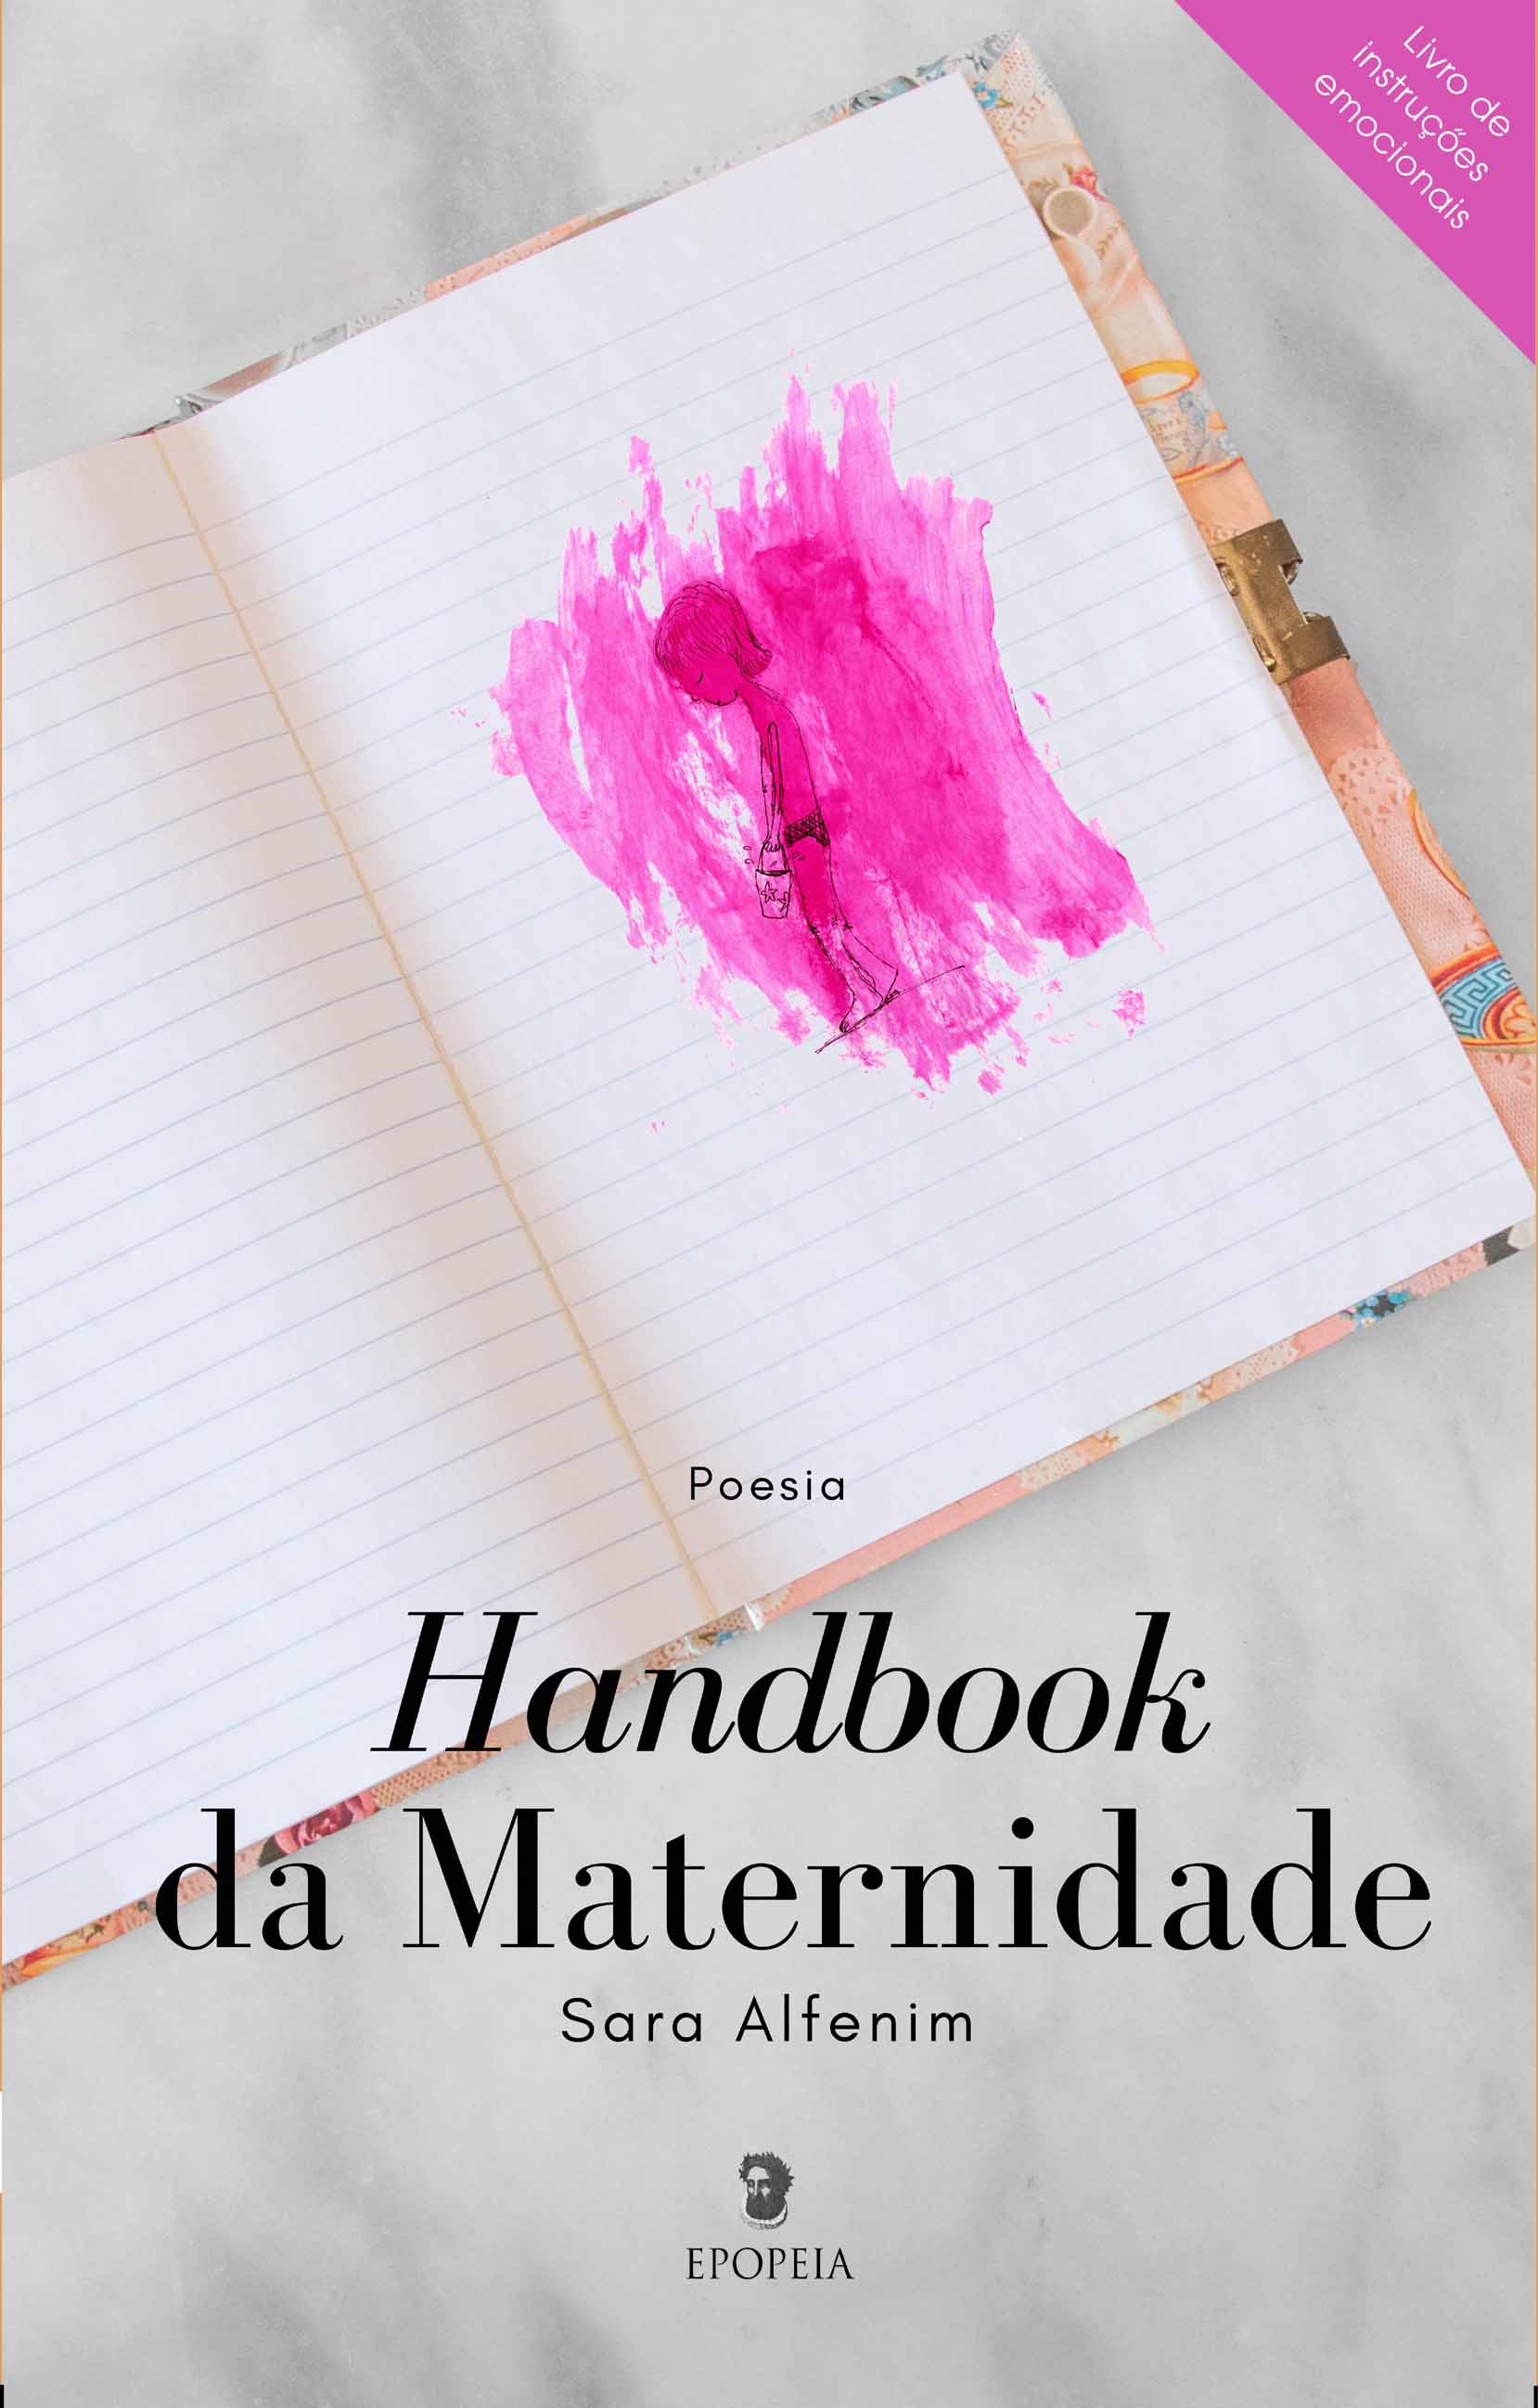 https://bo.gruponarrativa.pt/fileuploads/CATALOGO/Ficção/Poesia/_Capafrente Handbook da Maternidade.jpg